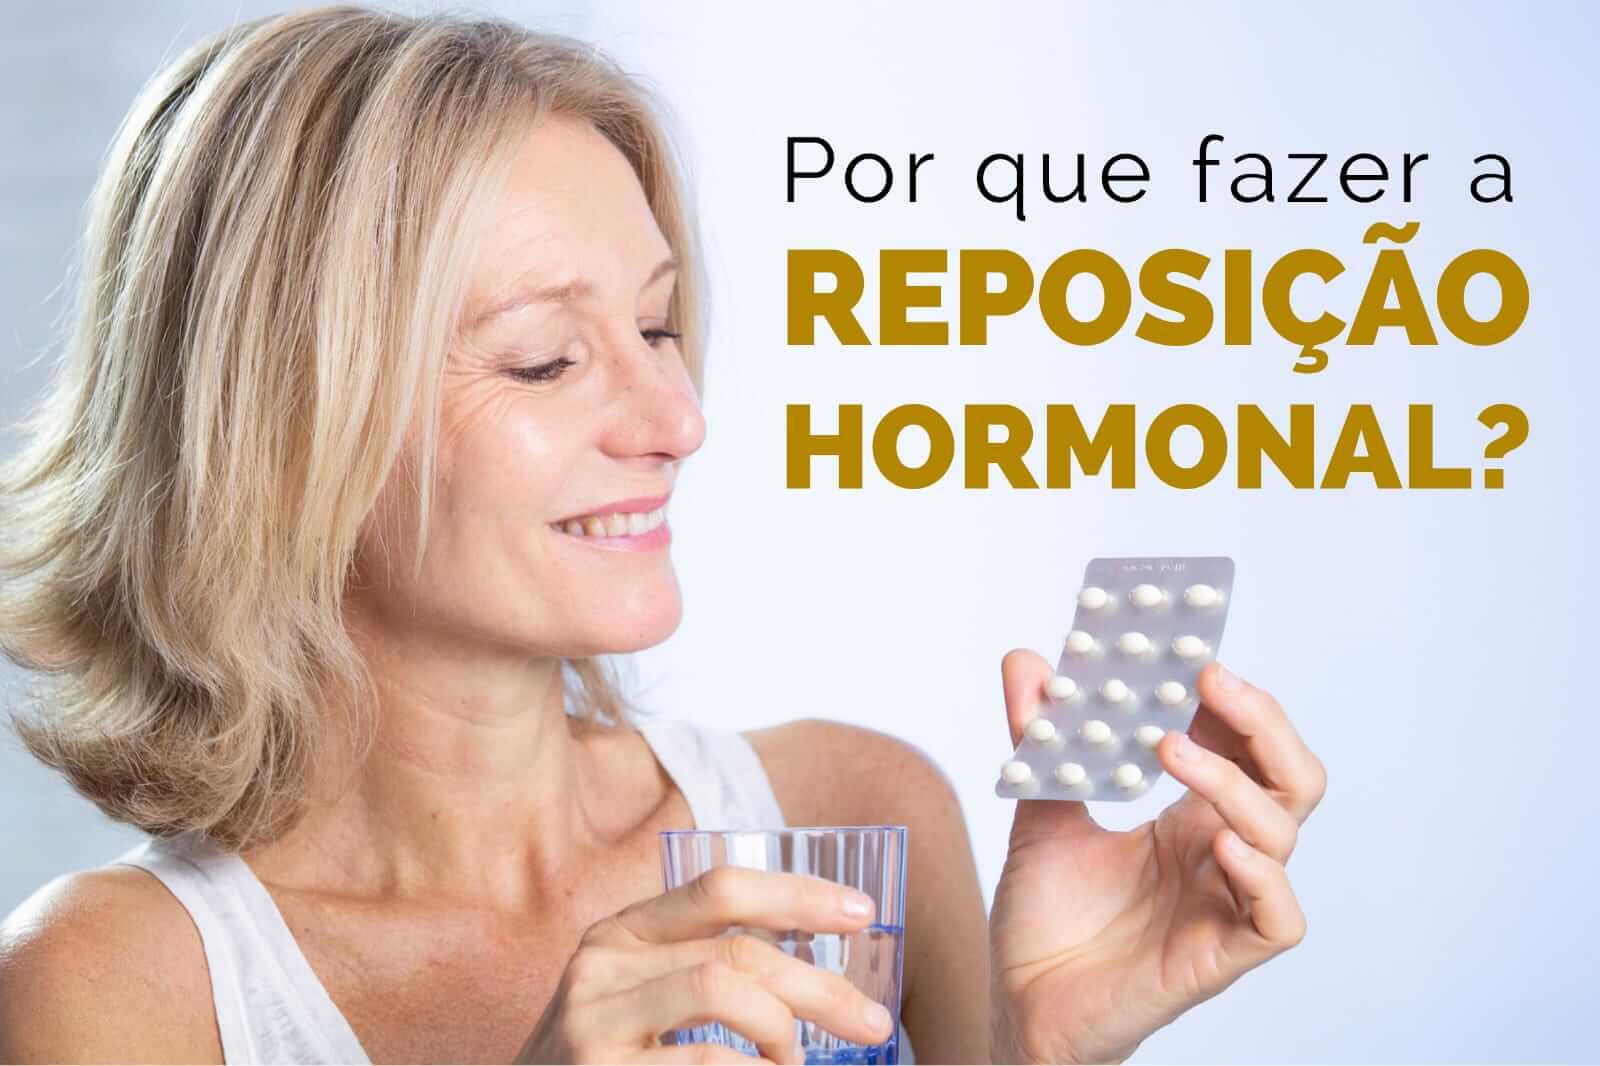 Por que fazer a reposição hormonal?